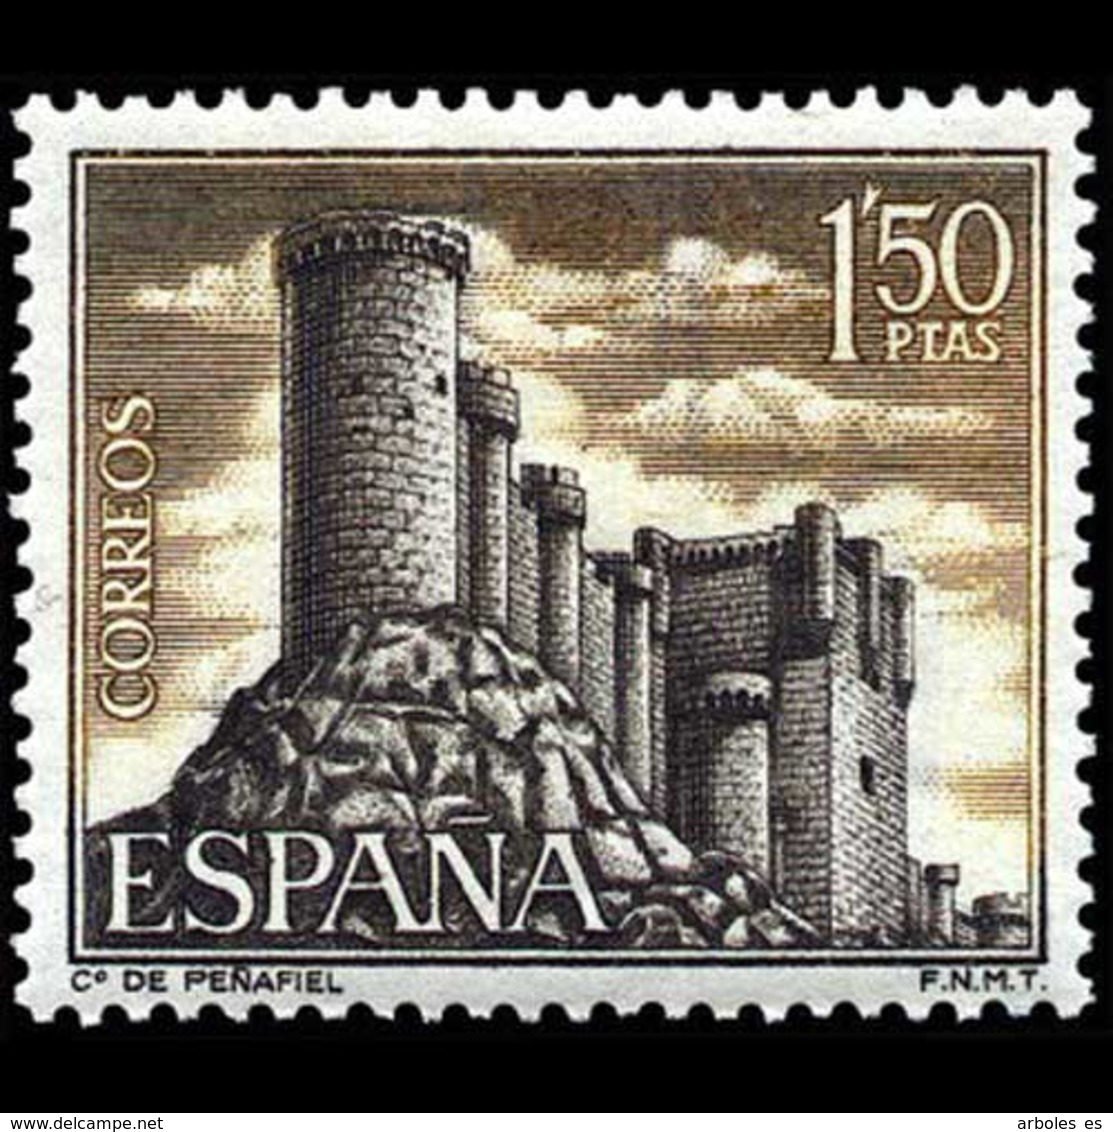 CASTILLOS ESPAÑA - AÑO 1968 - Nº EDIFIL 1882 - Nuevos